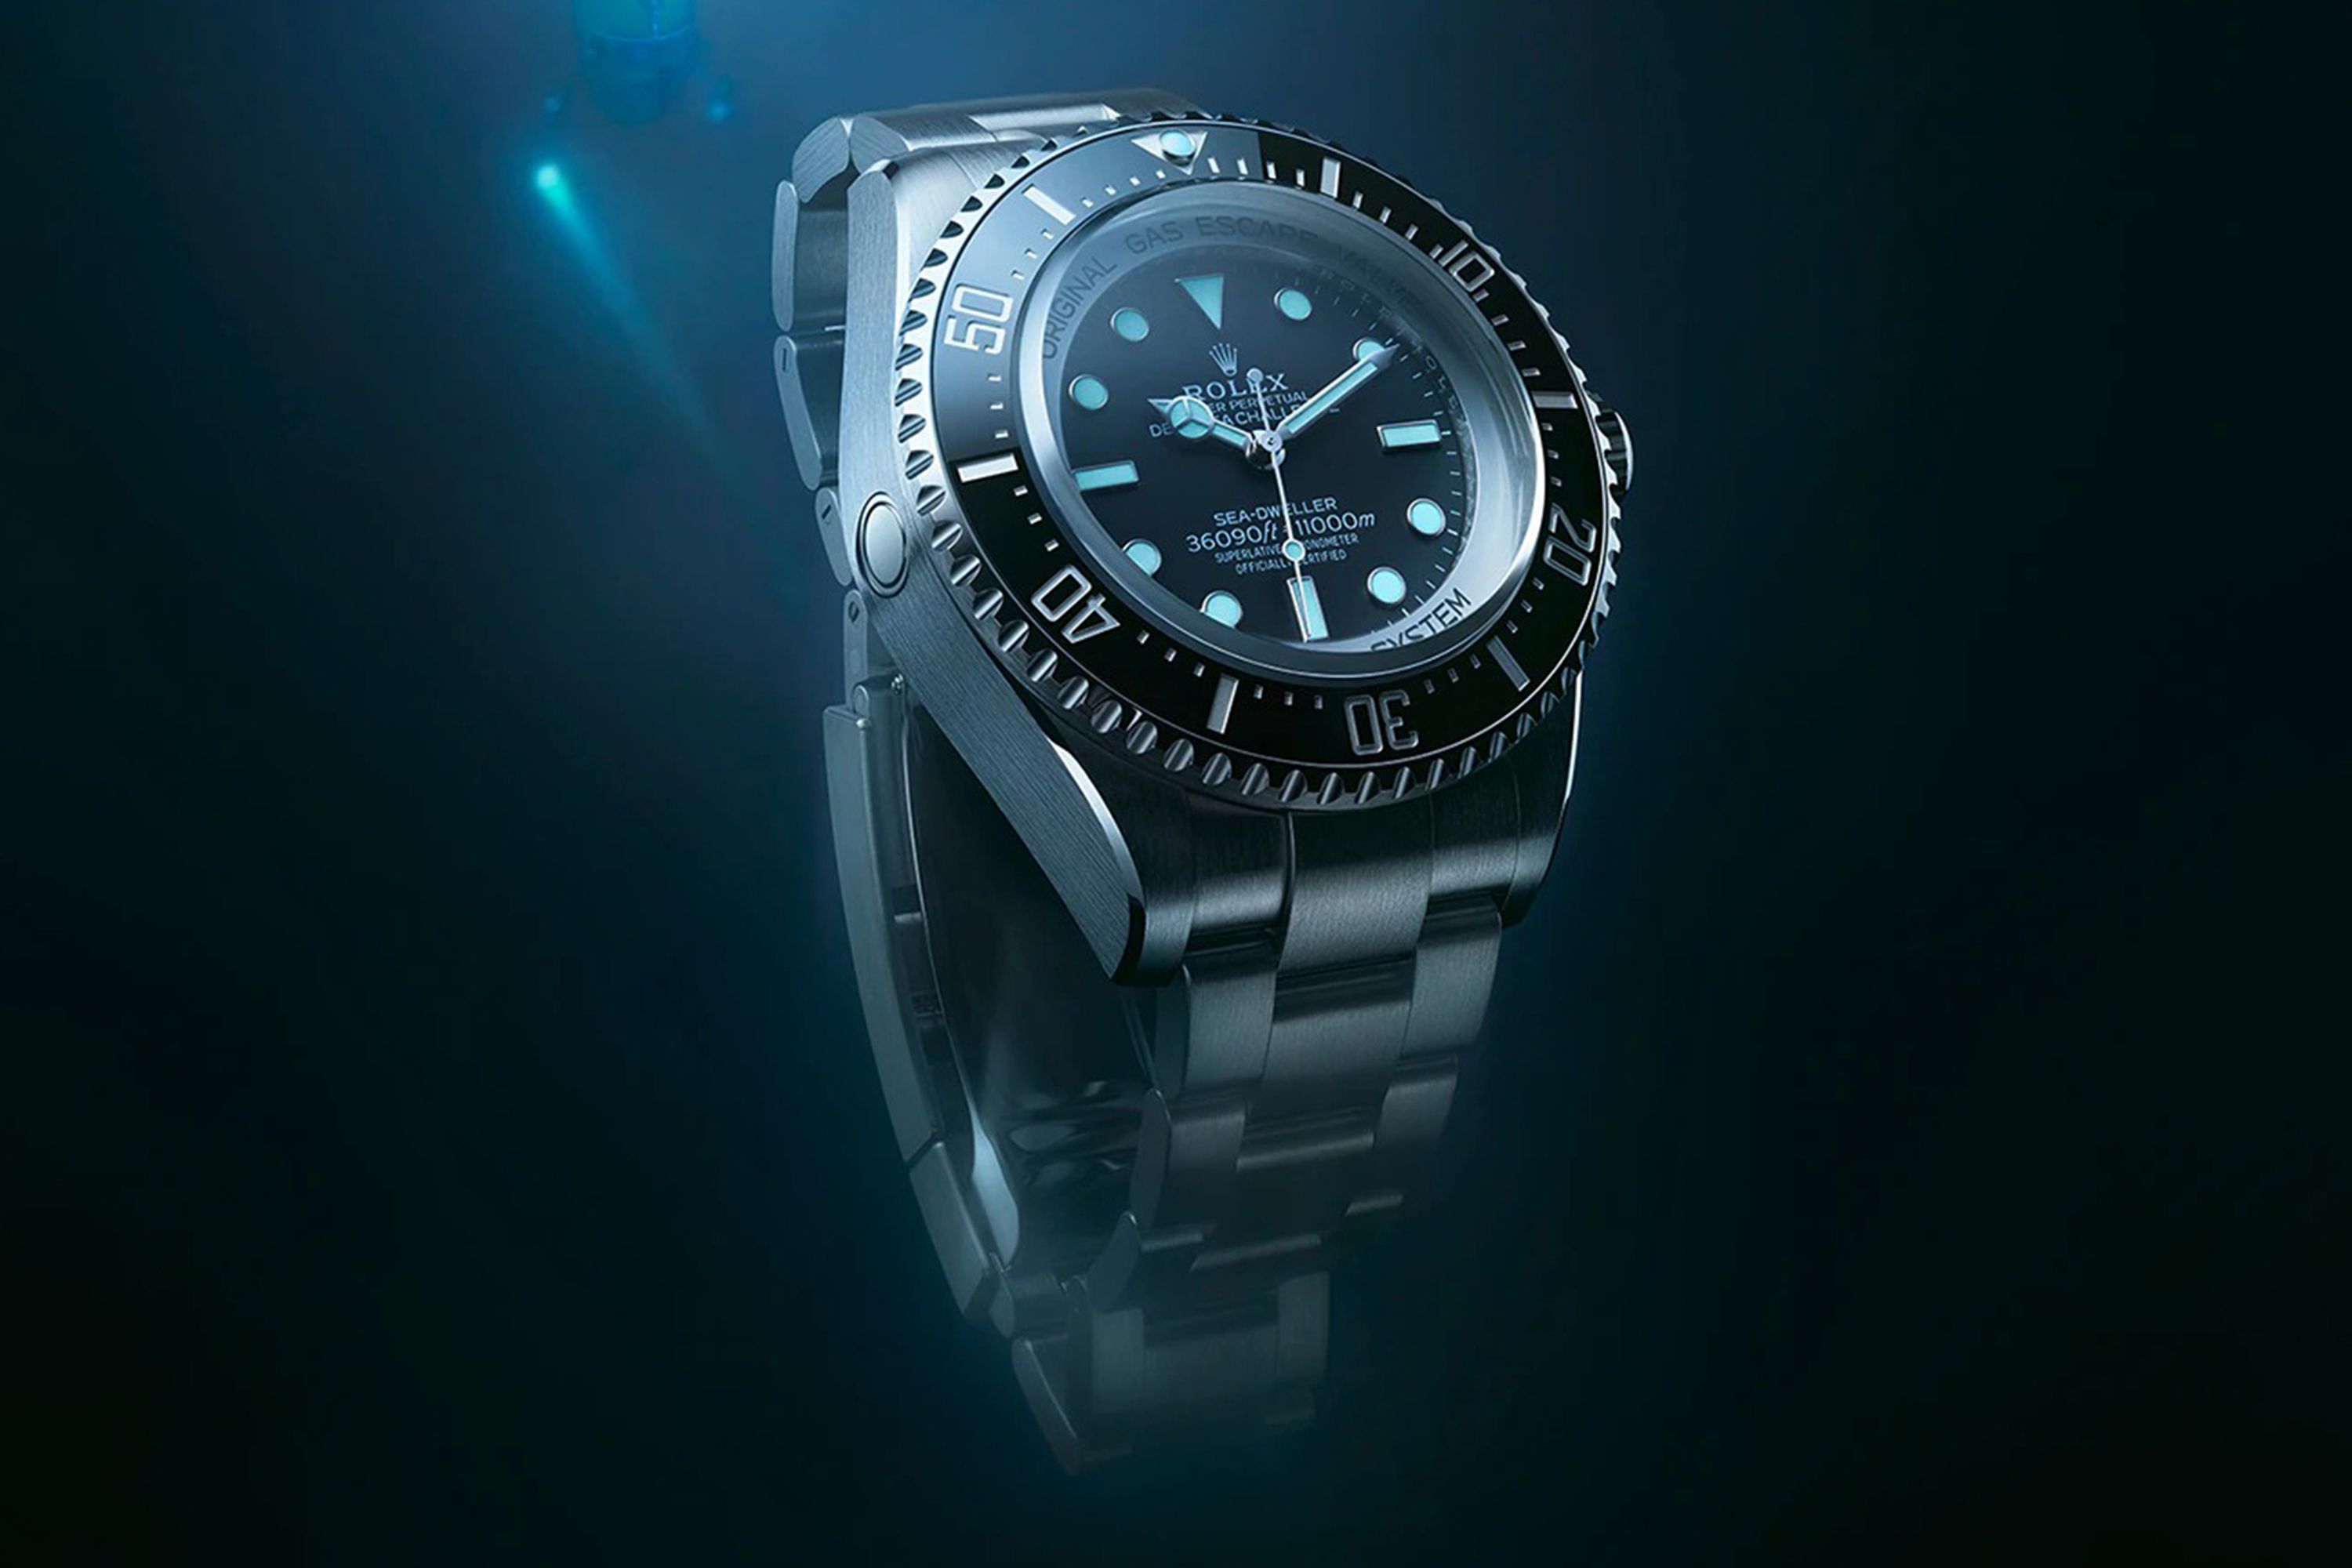 Rolex's First Titanium Watch Is Finally